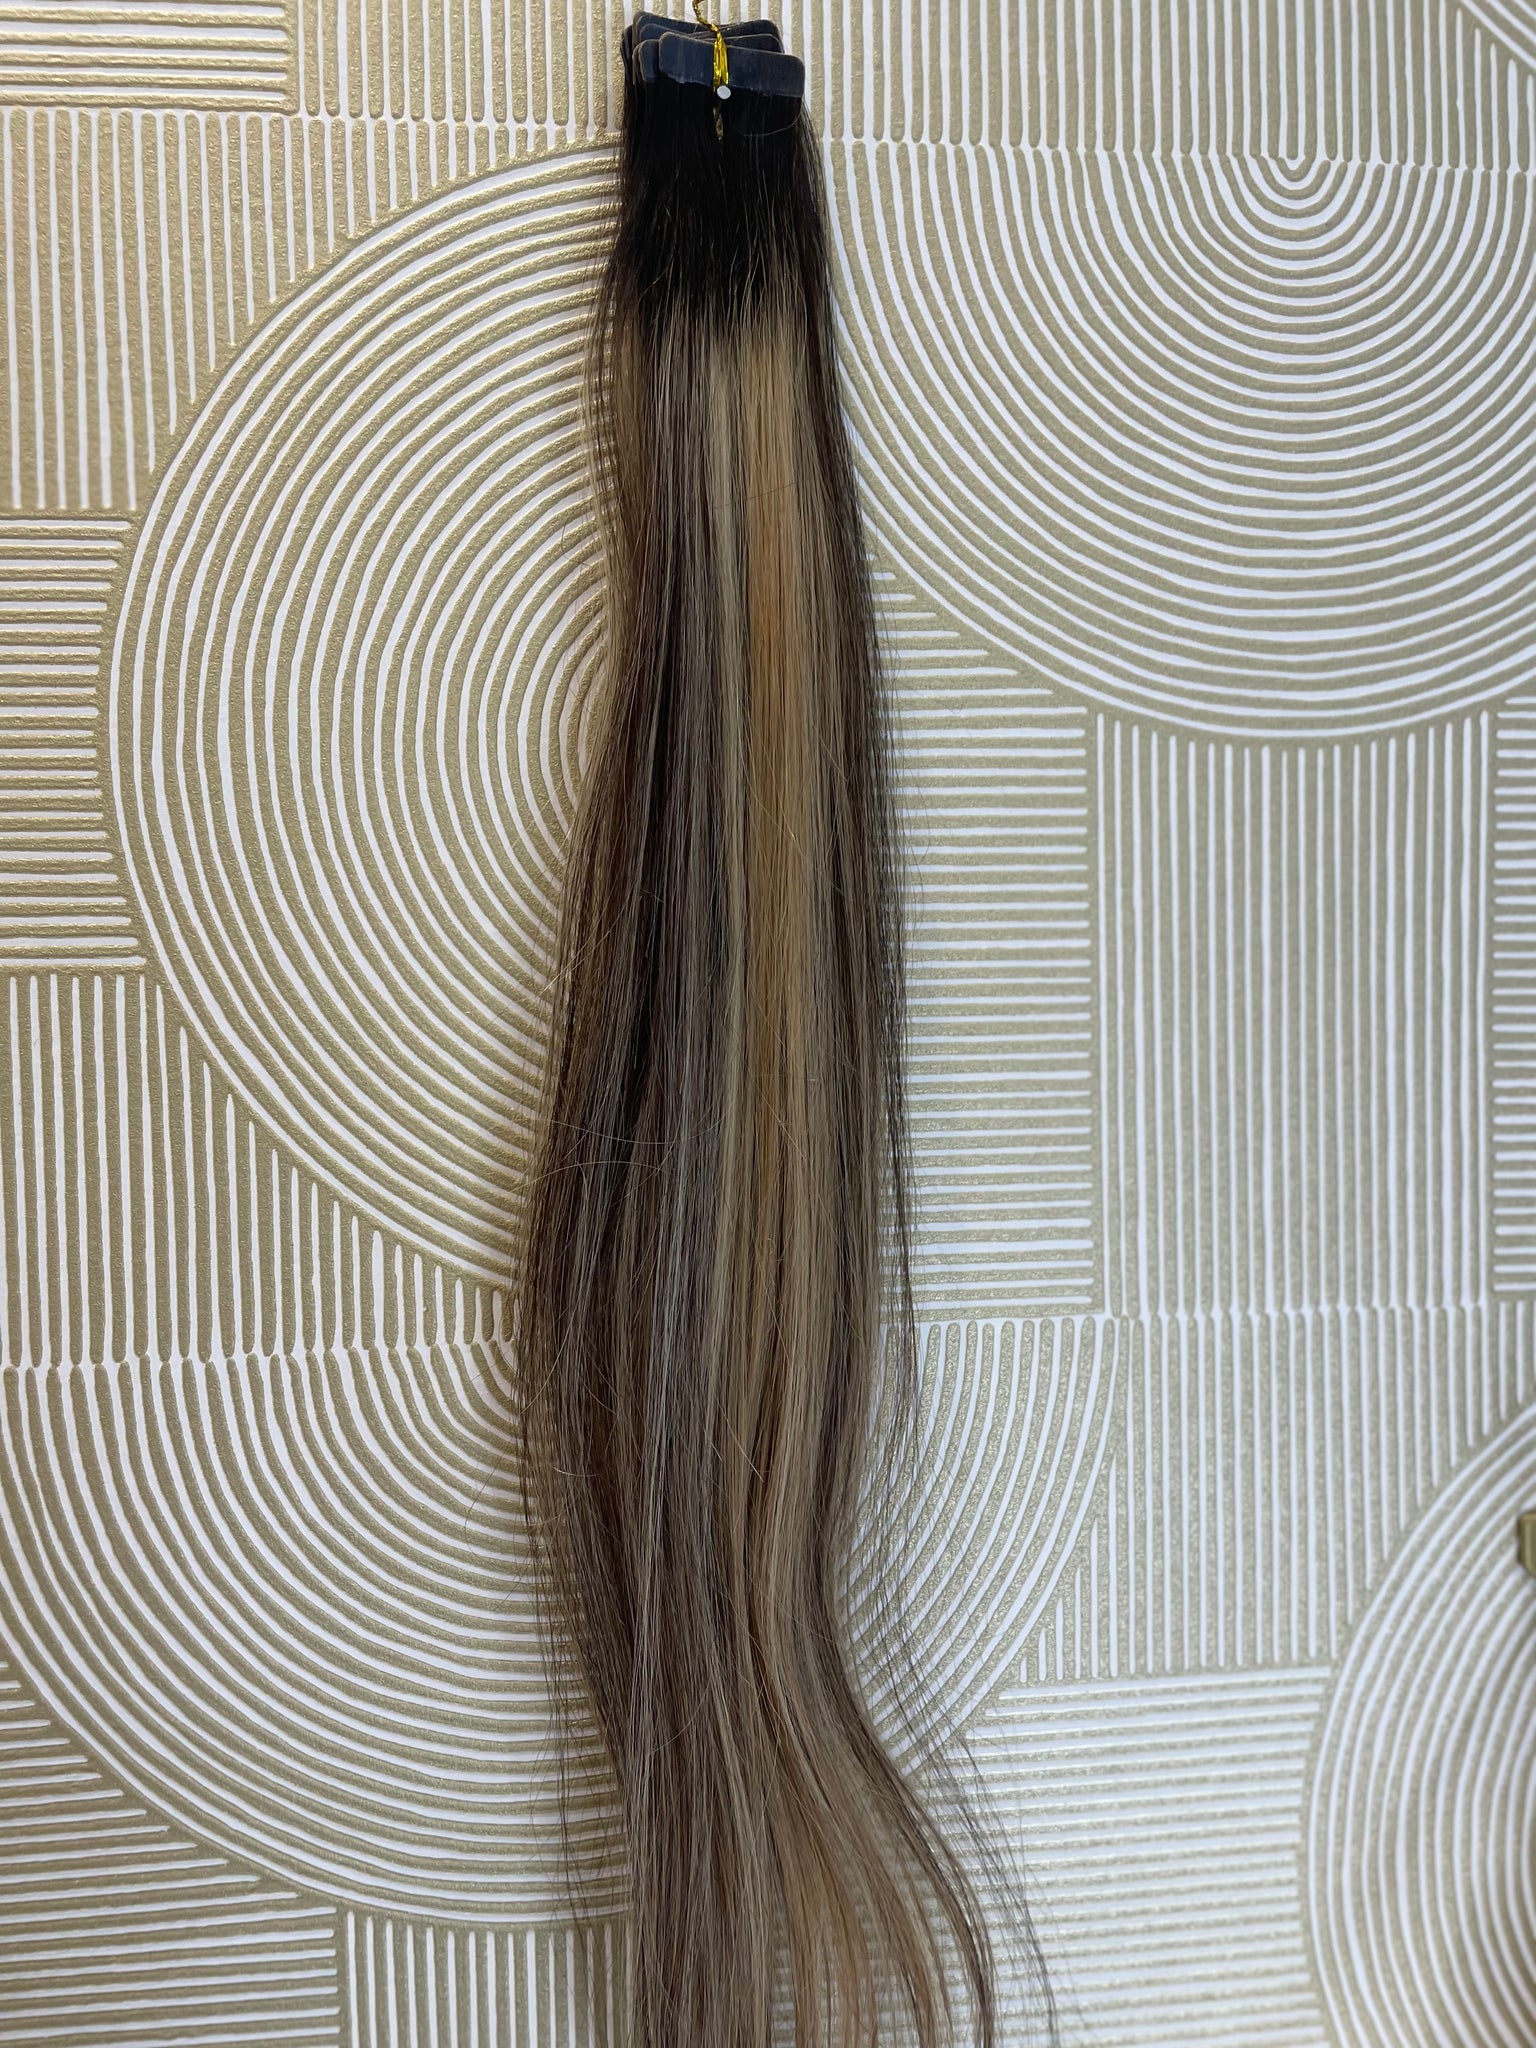 Extensions Tape 50 gram (1B-613-5q B) 55 cm European hair